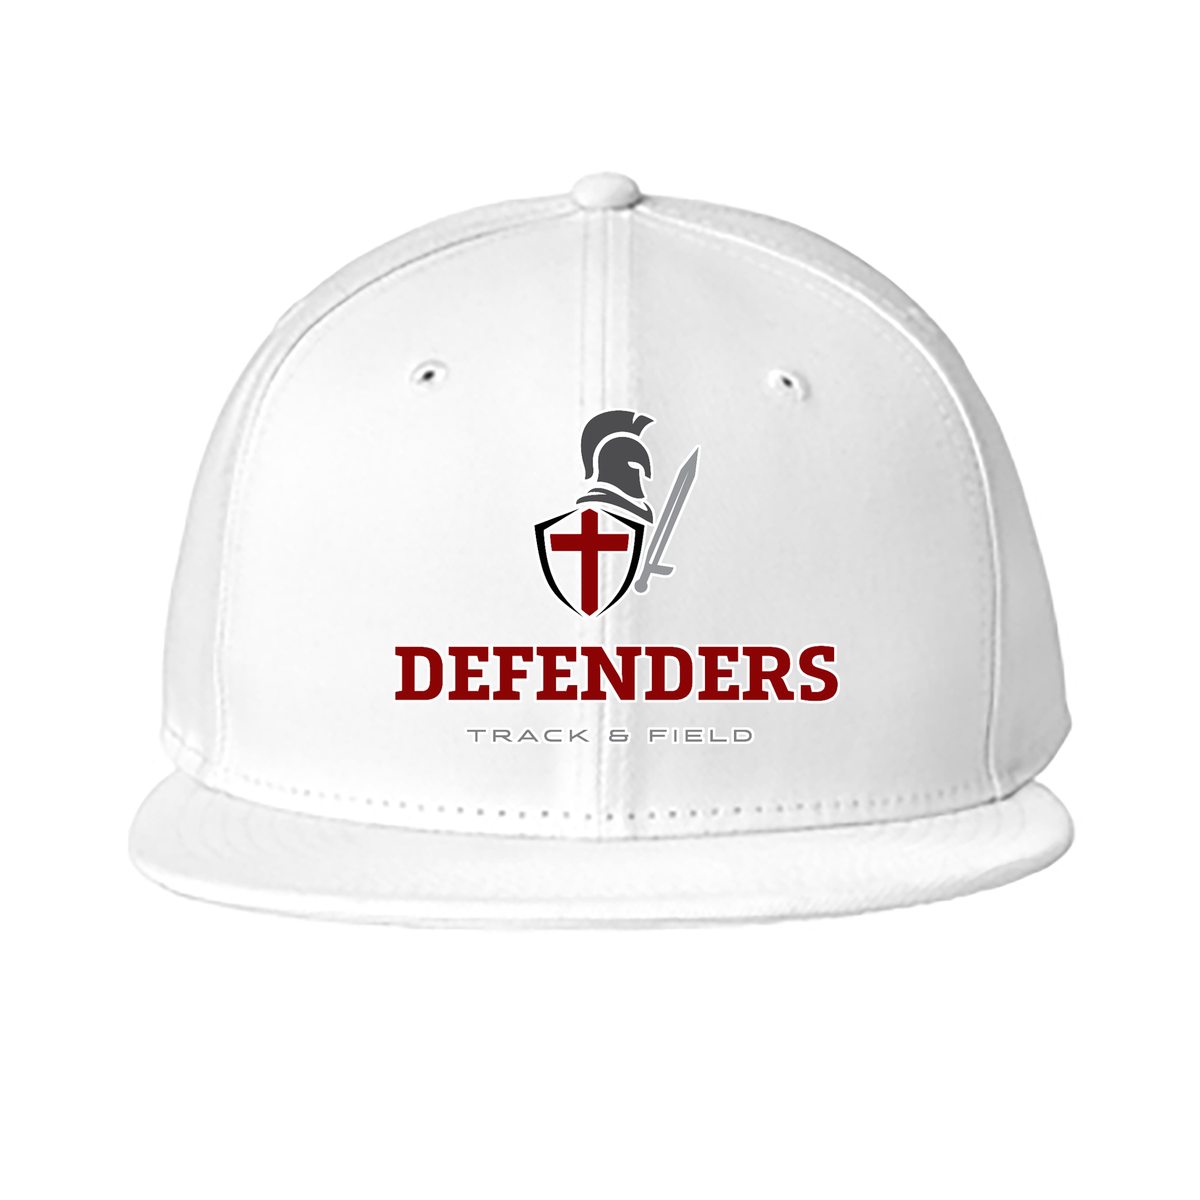 Defenders Track & Field New Era Standard Fit Flat Bill Snapback Cap